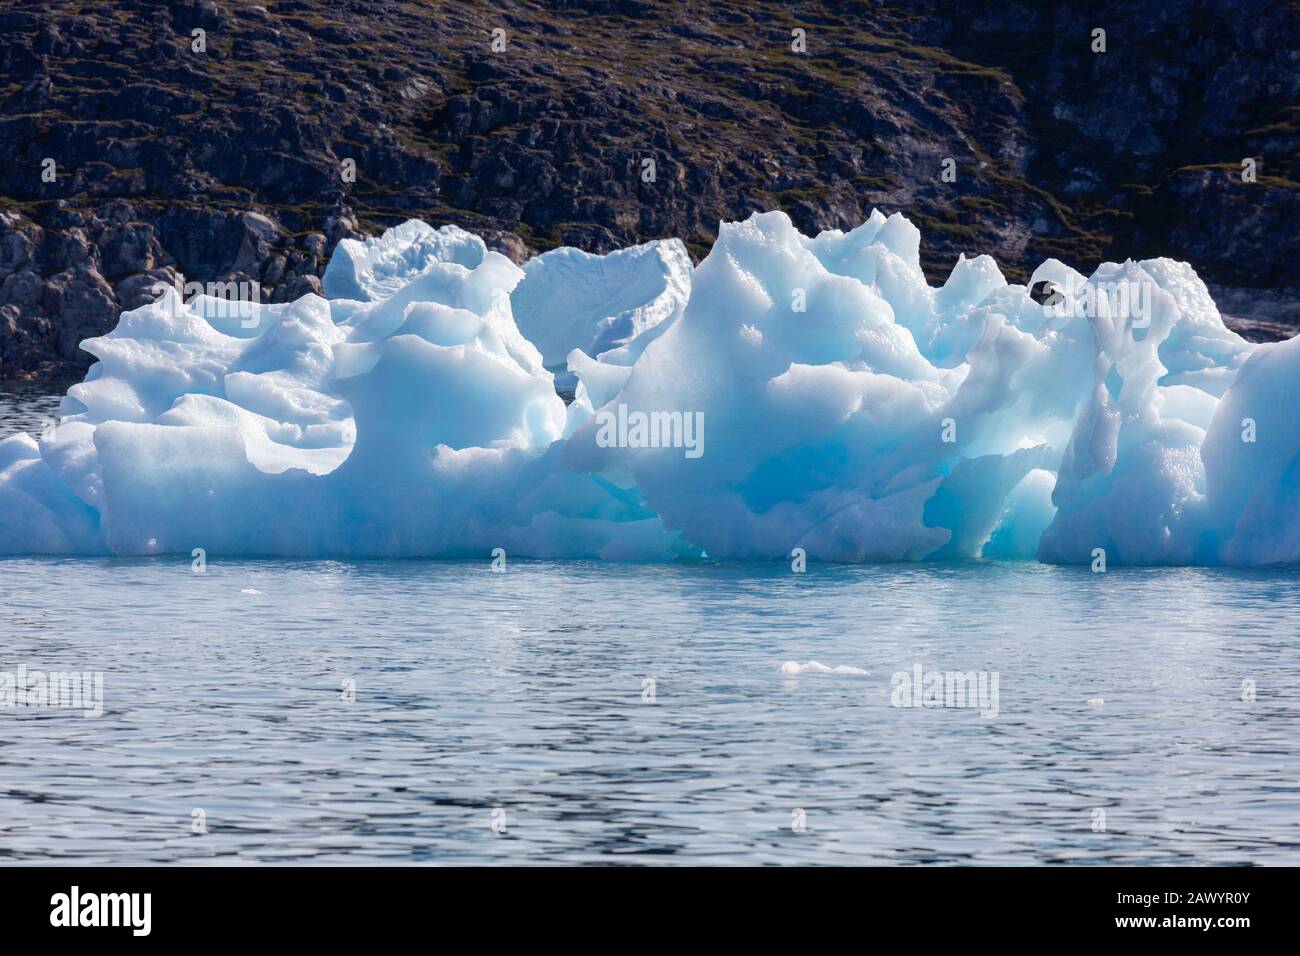 Fonte de la glace polaire sur l'océan Atlantique ensoleillé Groenland Banque D'Images